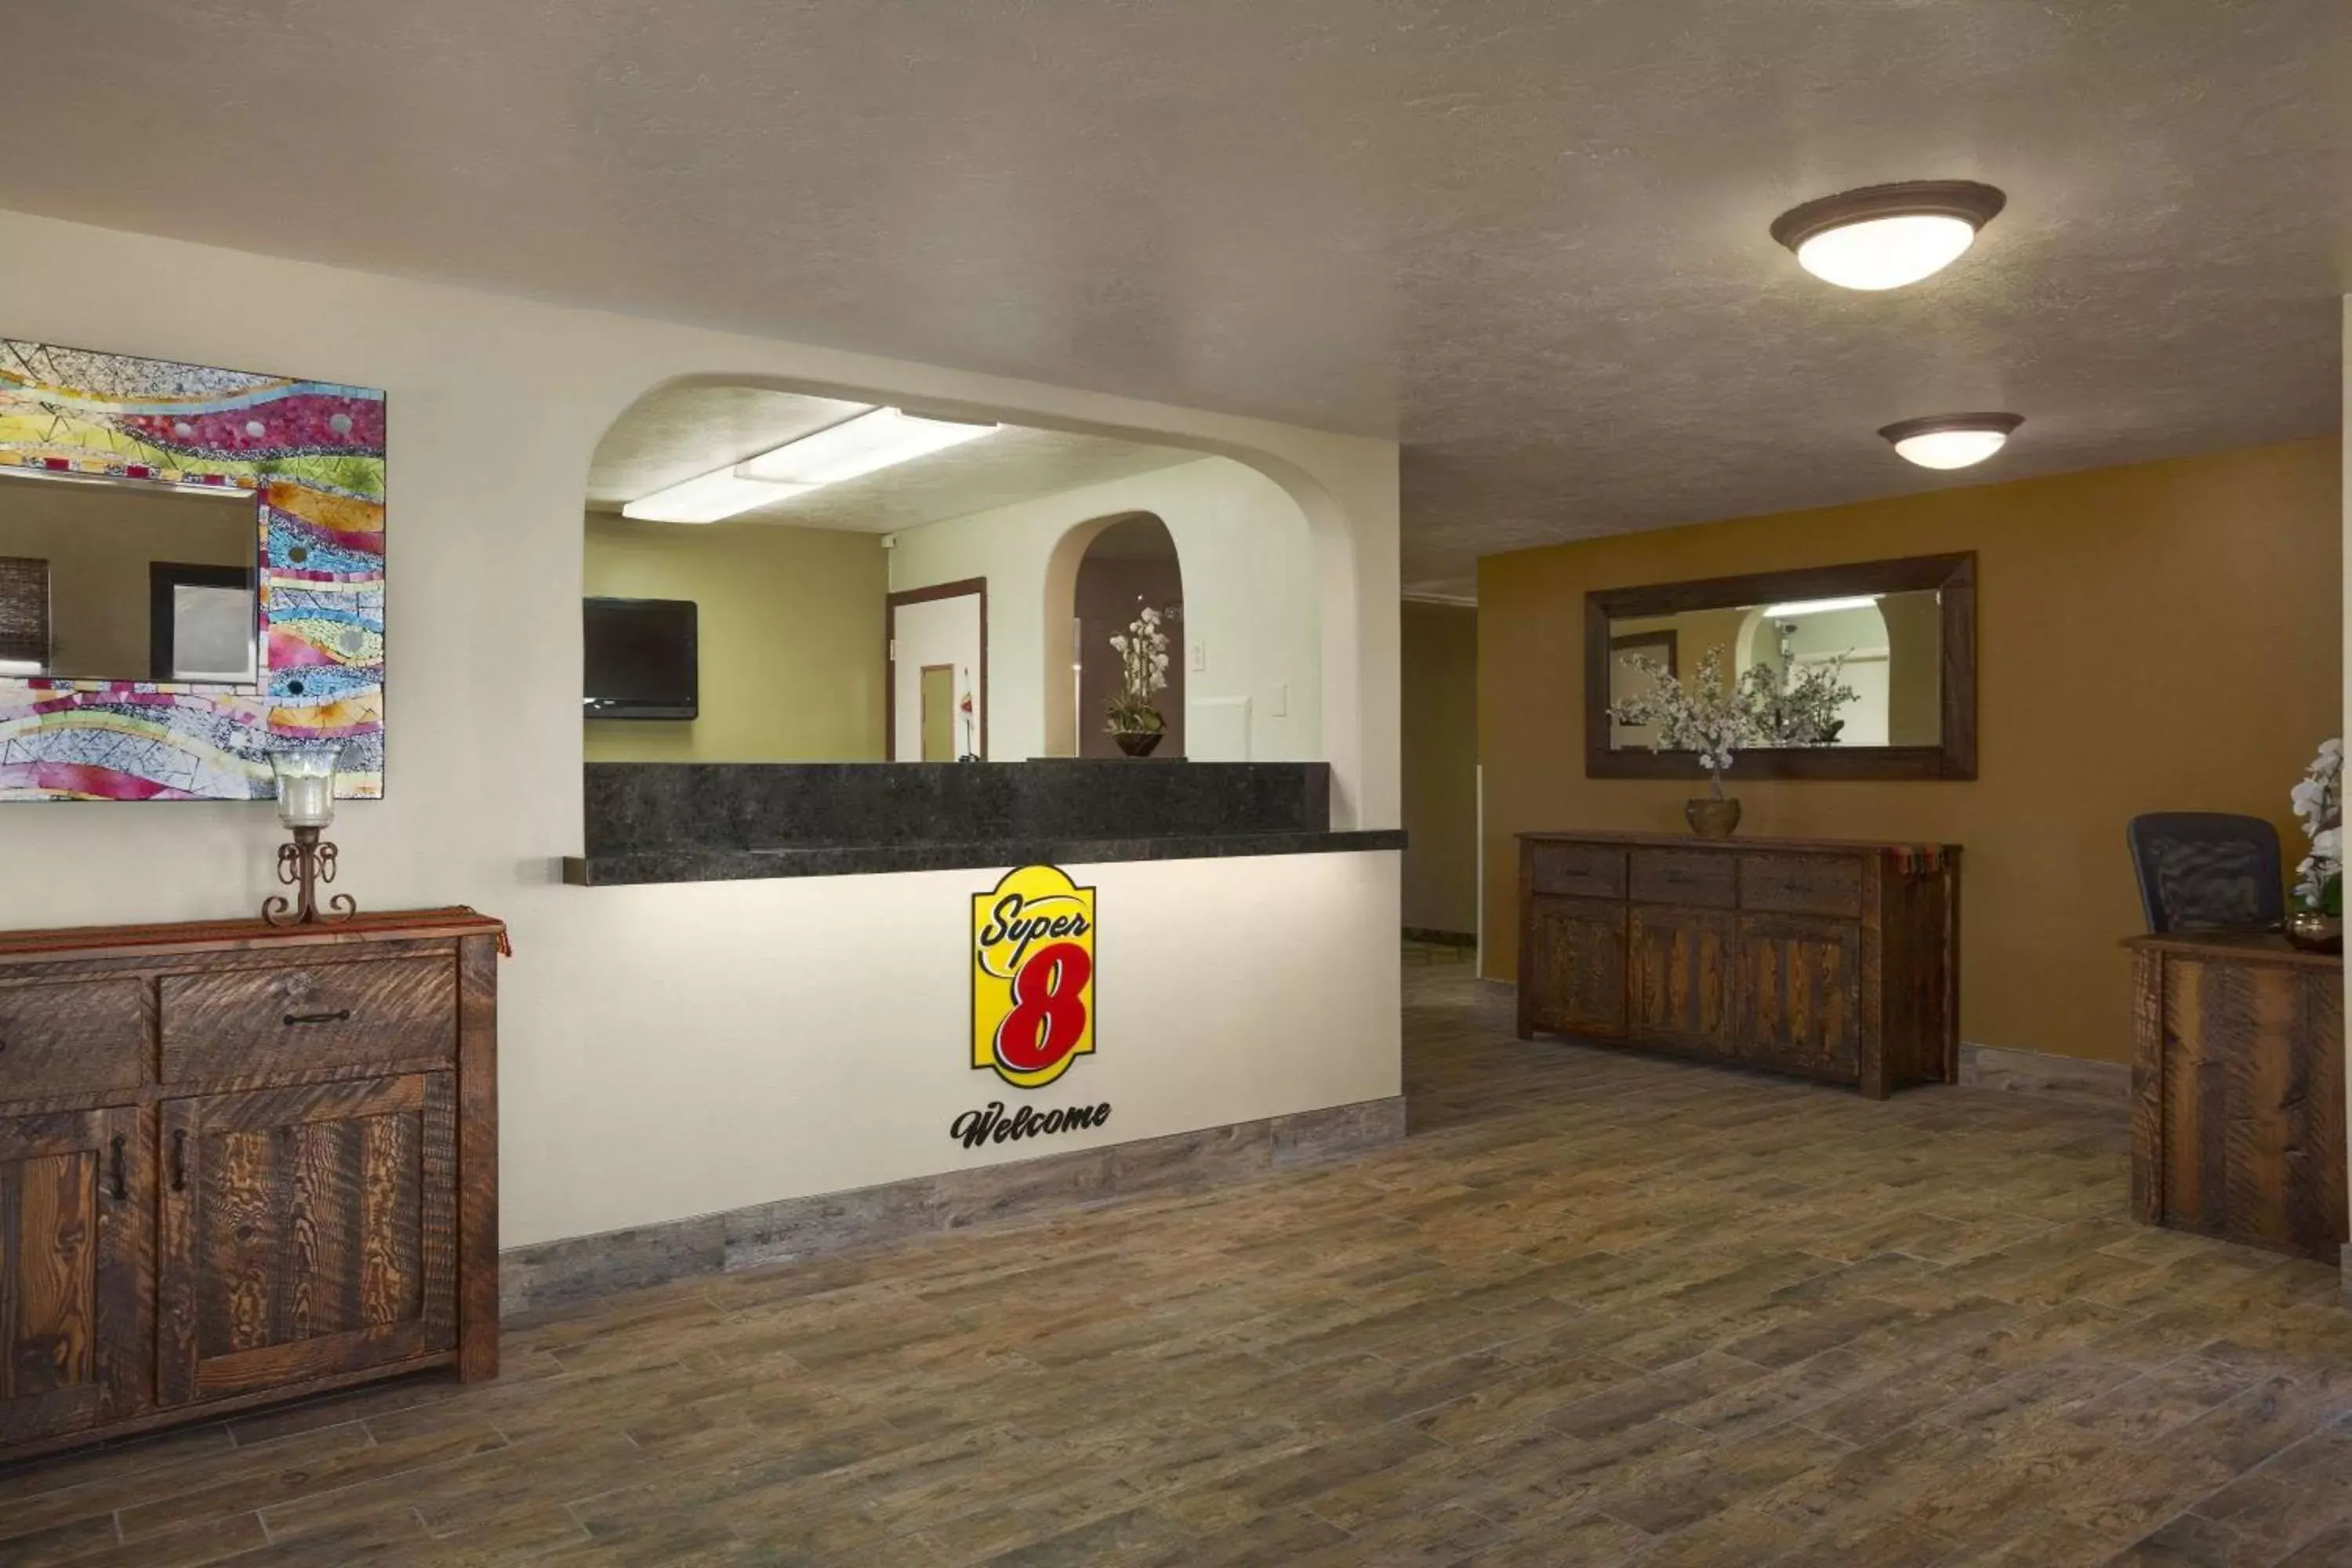 Lobby or reception, Lobby/Reception in Super 8 by Wyndham Idaho Falls